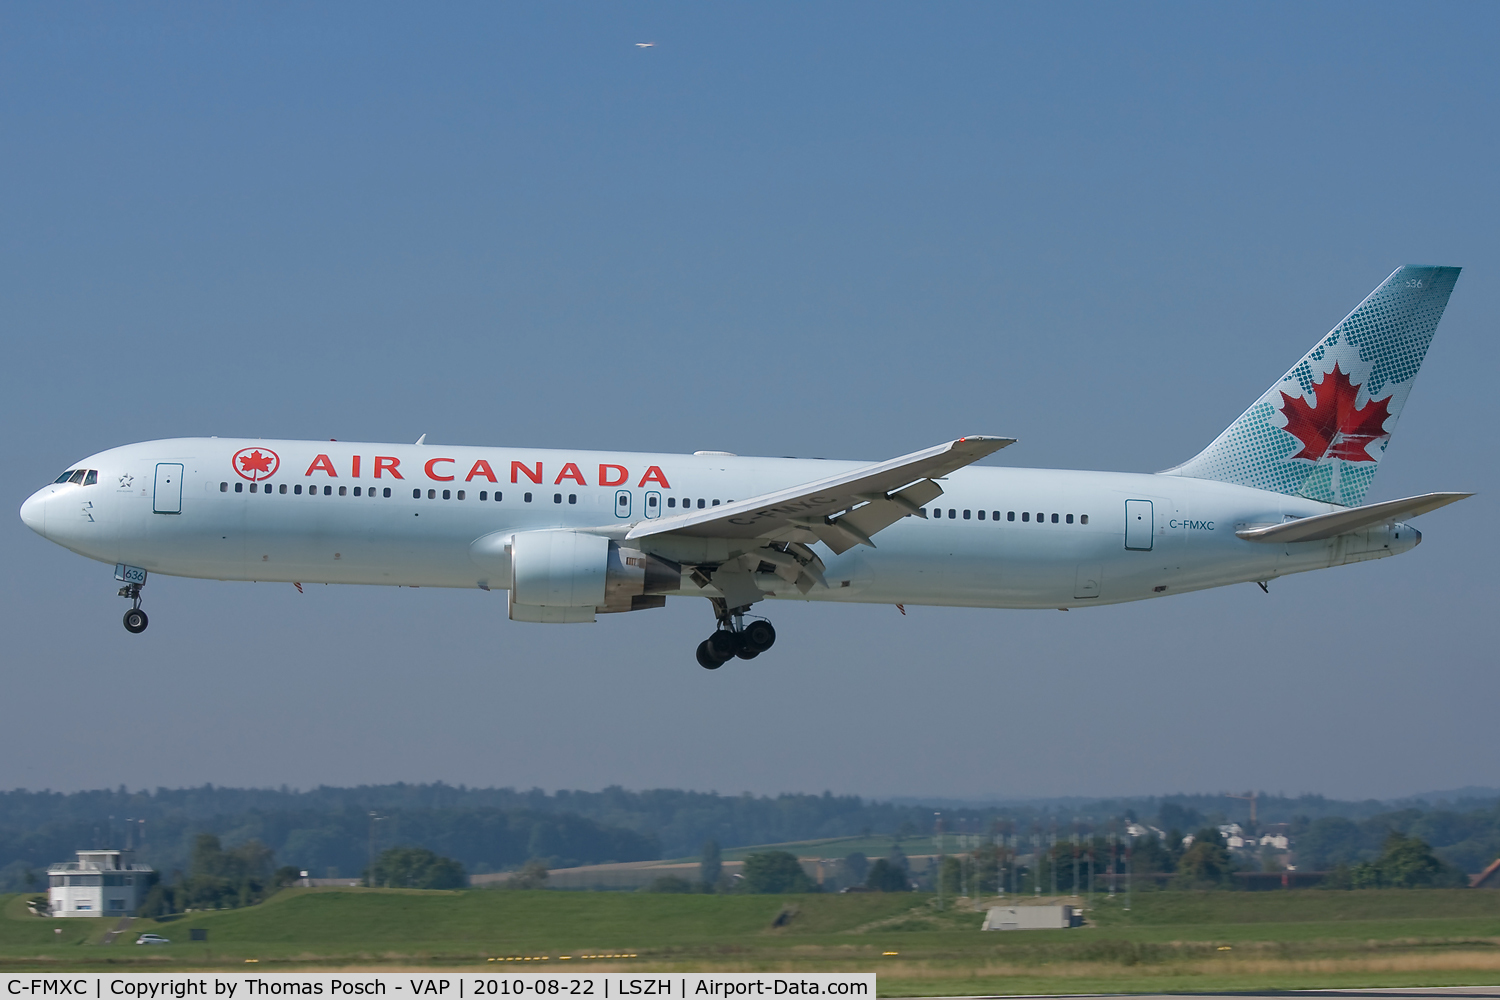 C-FMXC, 1996 Boeing 767-333/ER C/N 25588, Air Canada